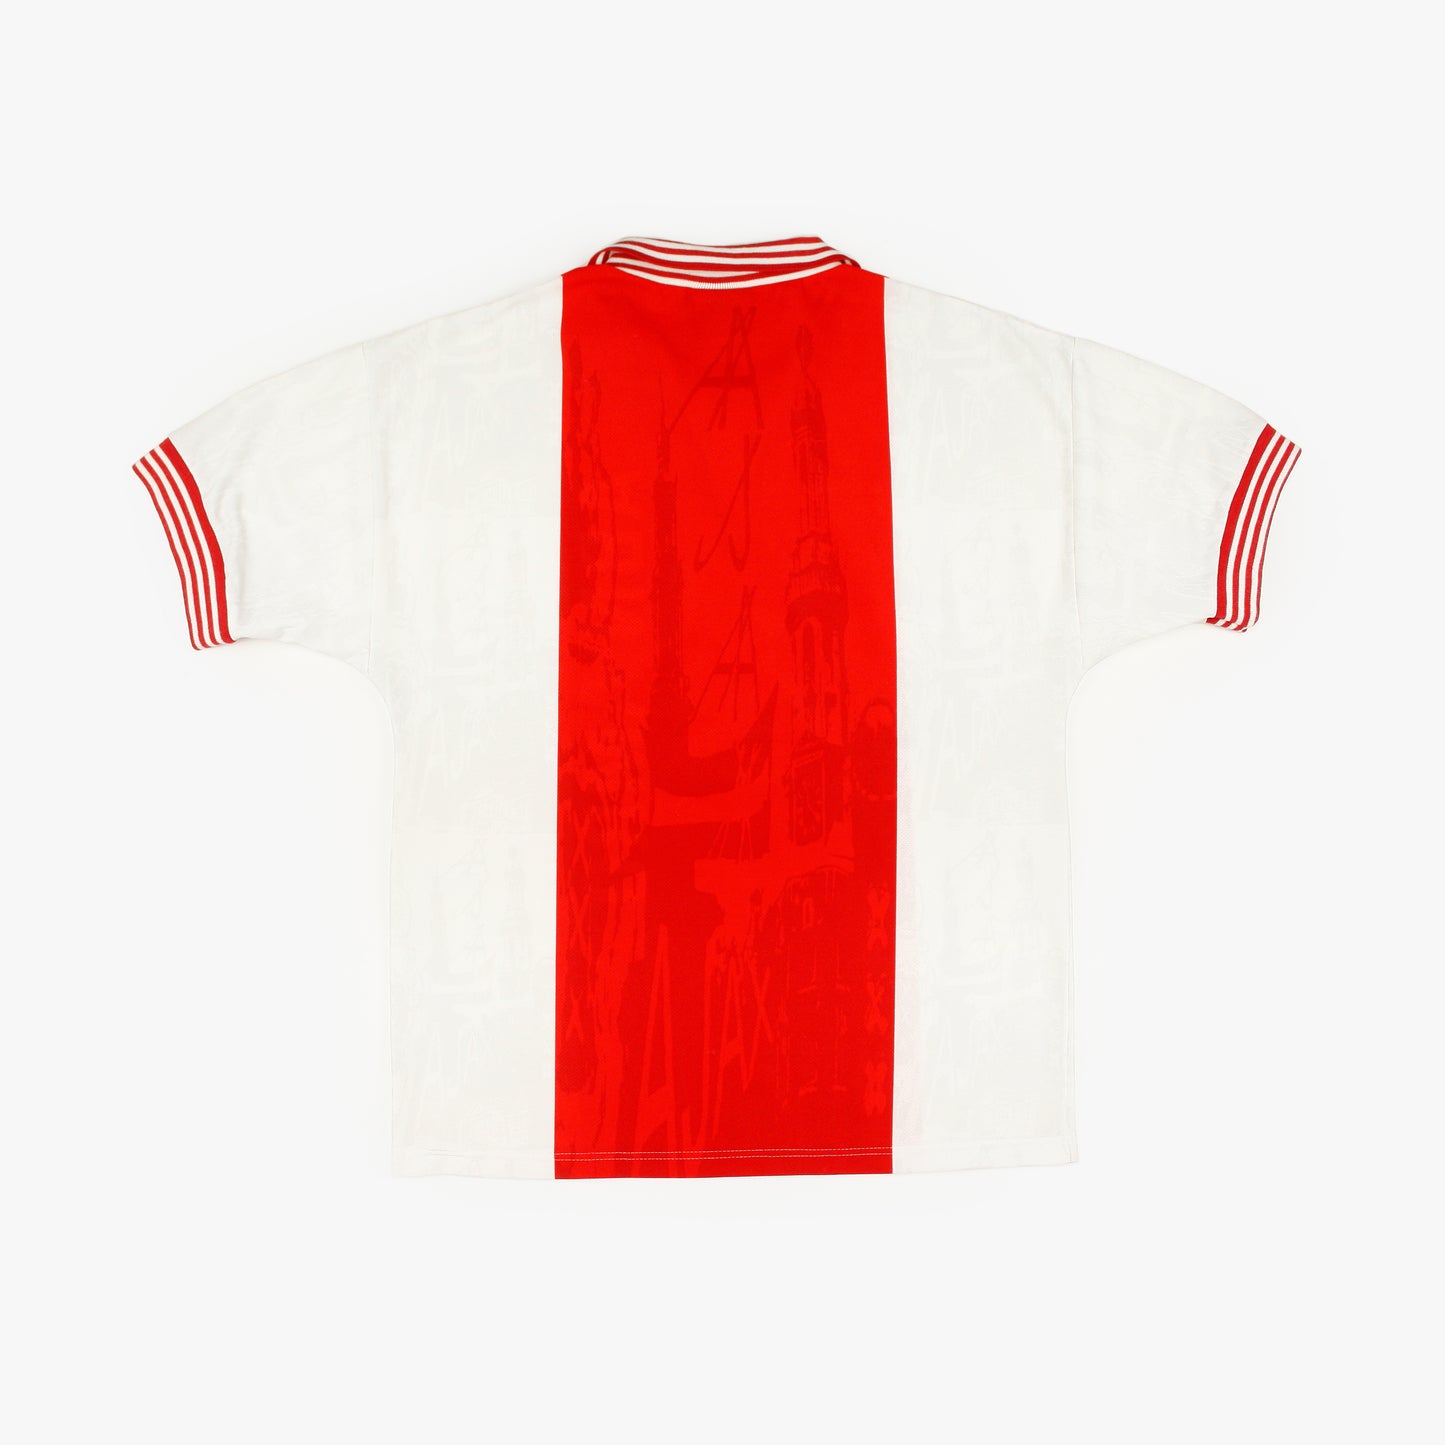 Ajax 96/97 • Camiseta Local • M